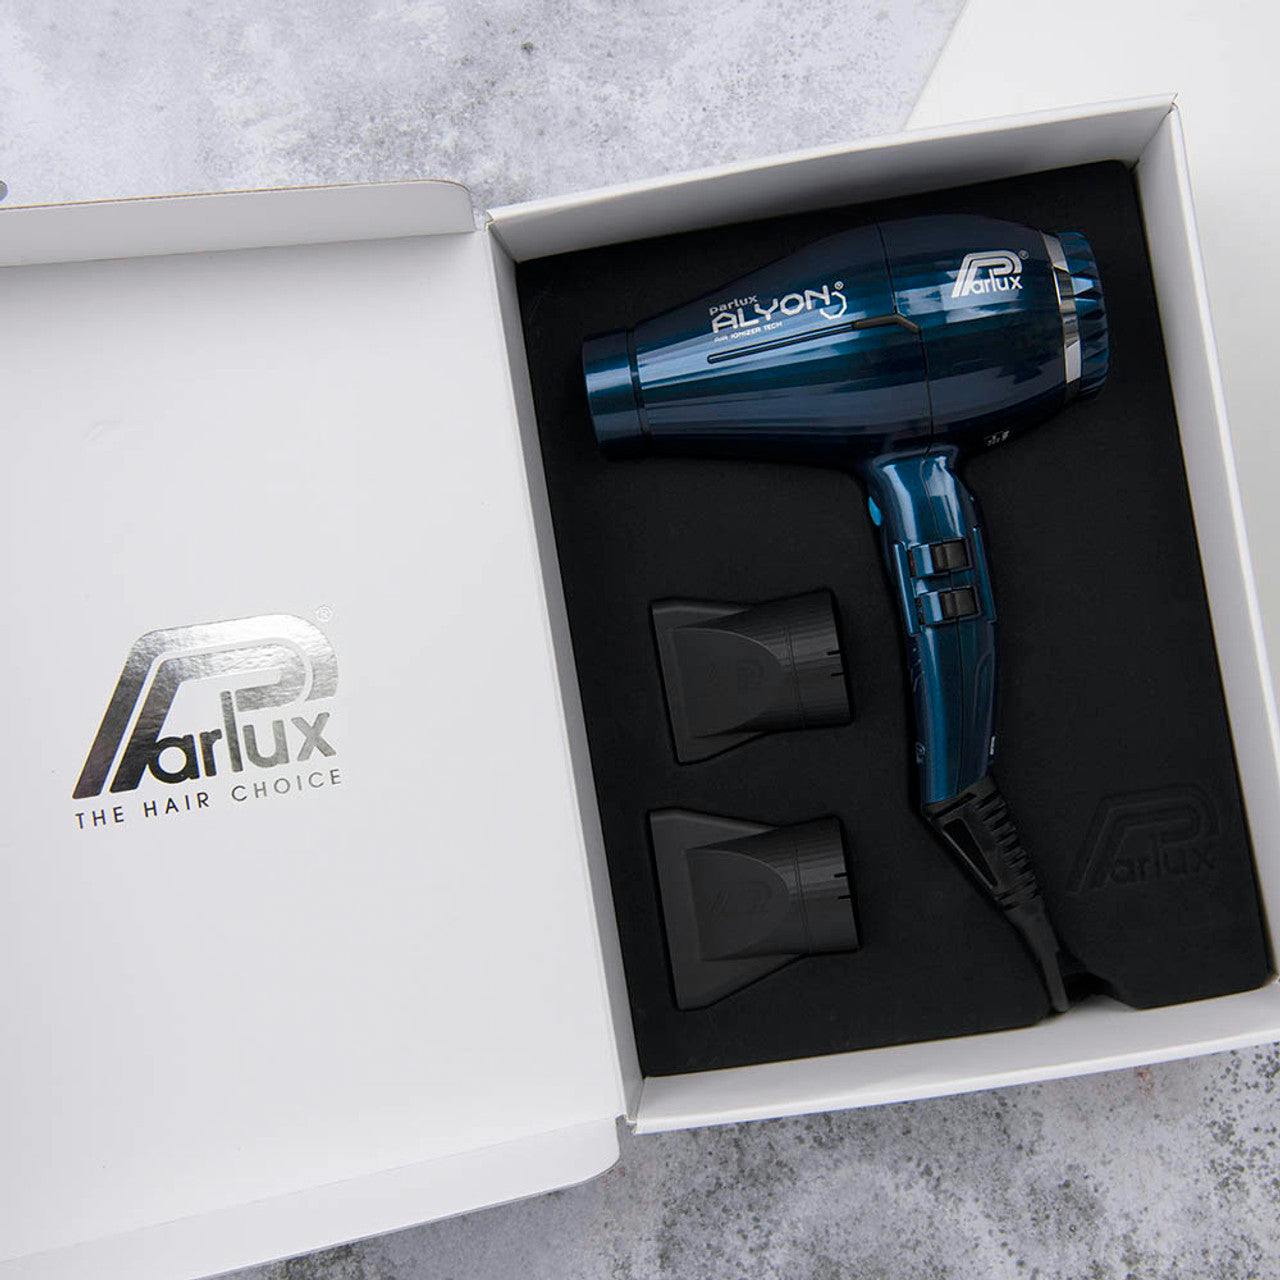 Parlux Alyon Air Ionizer 2250 Tech Hair Dryer - Midnight Blue